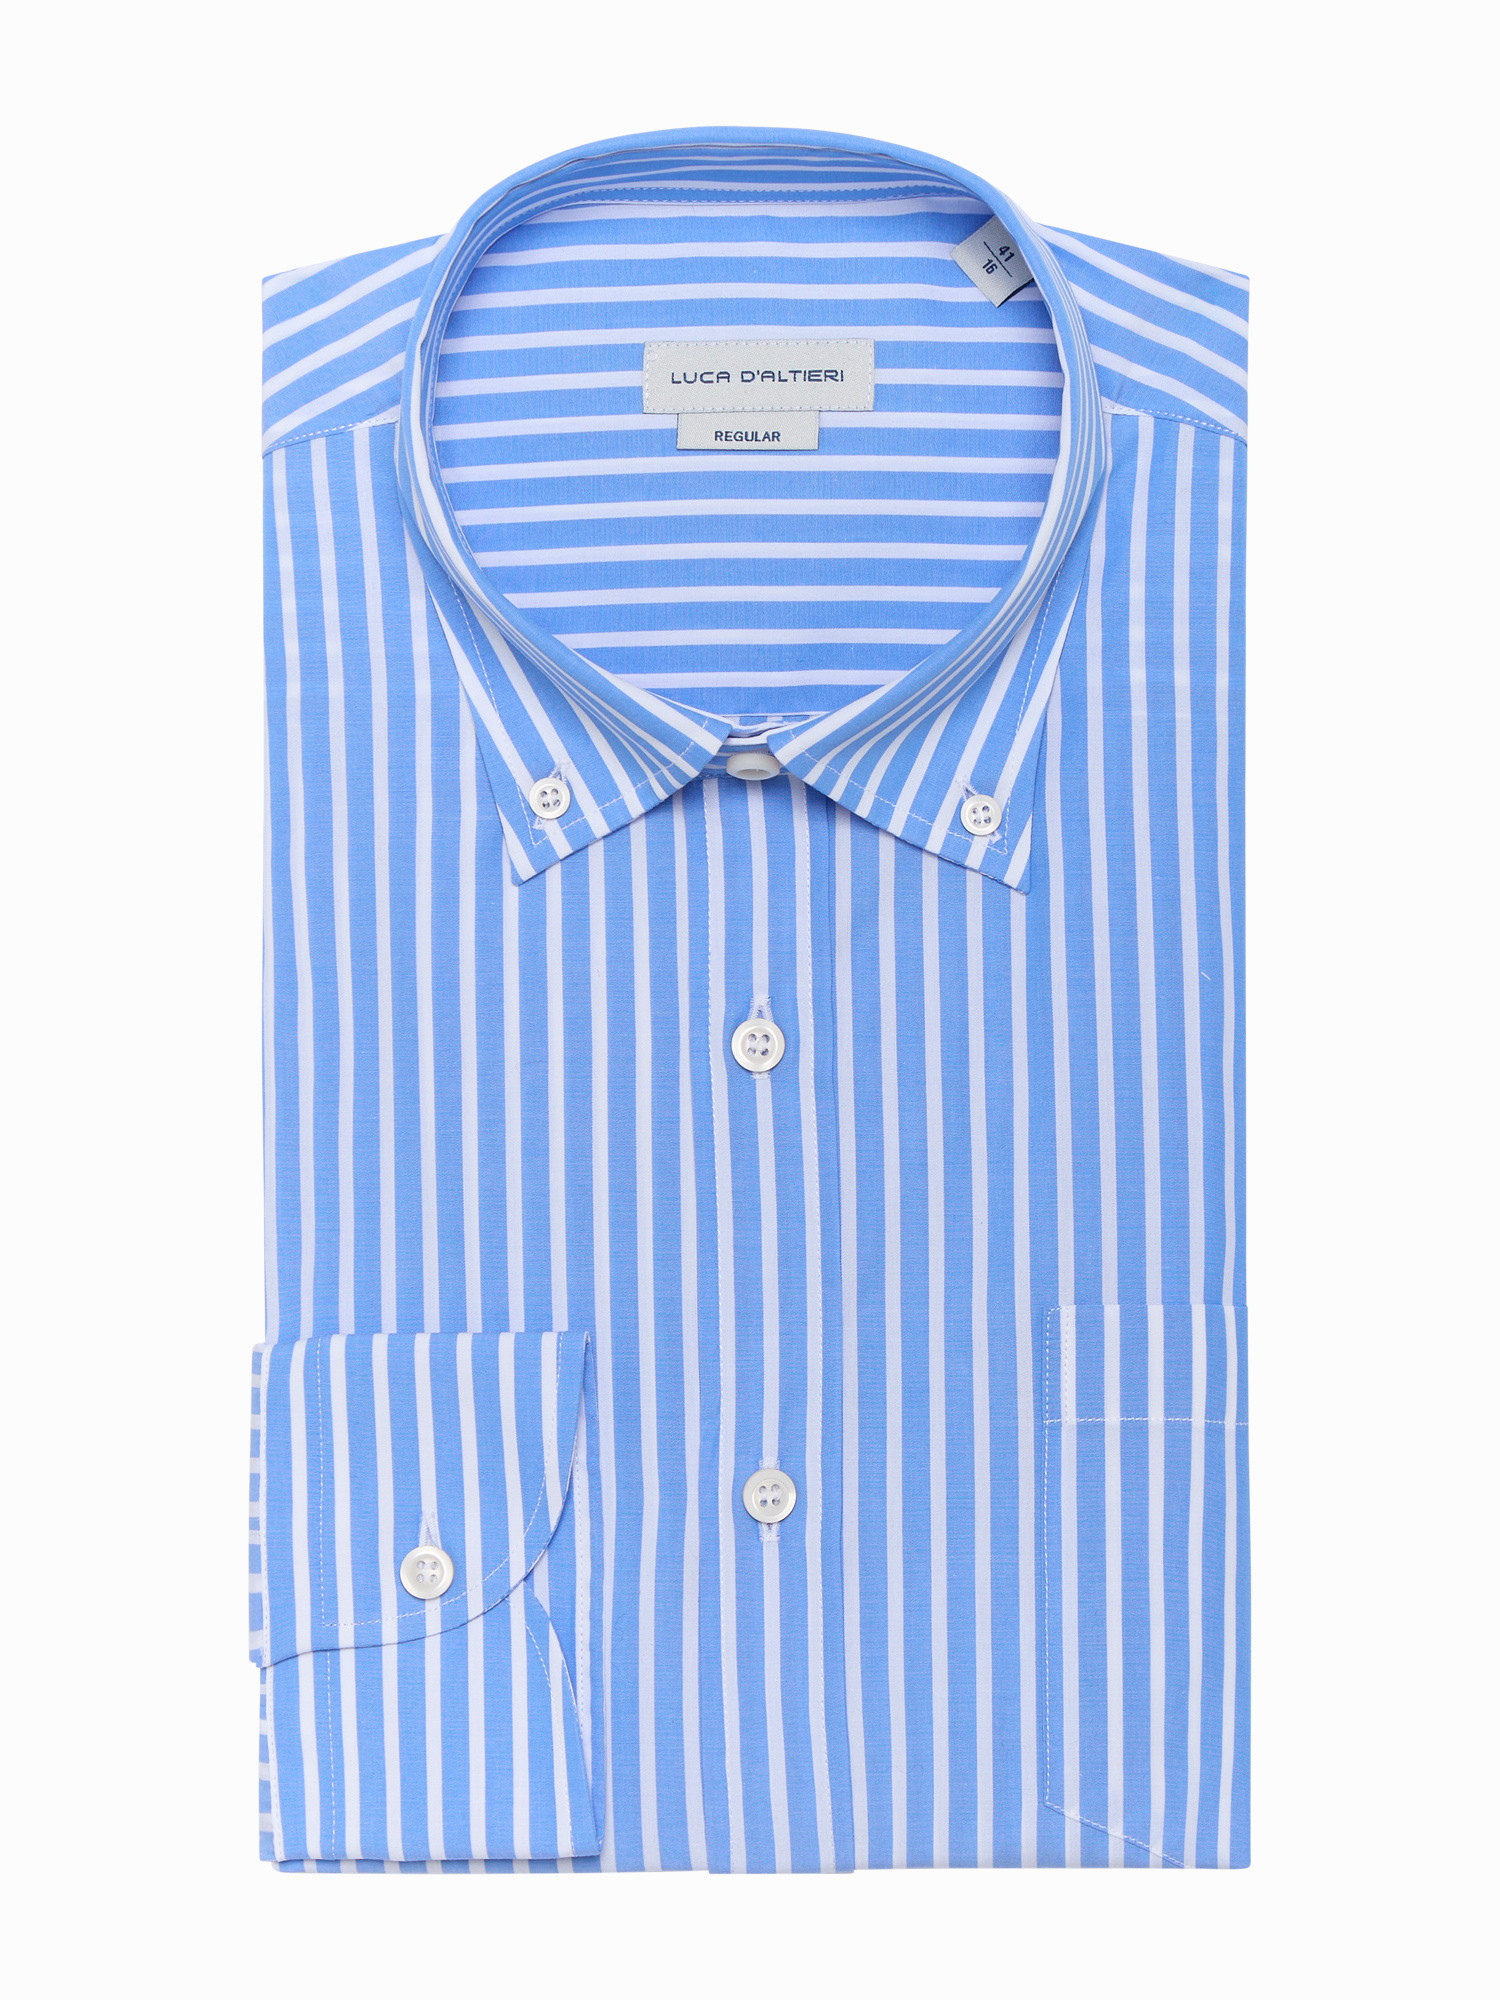 Luca D'Altieri повседневная рубашка стандартного кроя из поплина из чистого хлопка, голубой рубашка однотонная с длинными рукавами и костюмным воротником